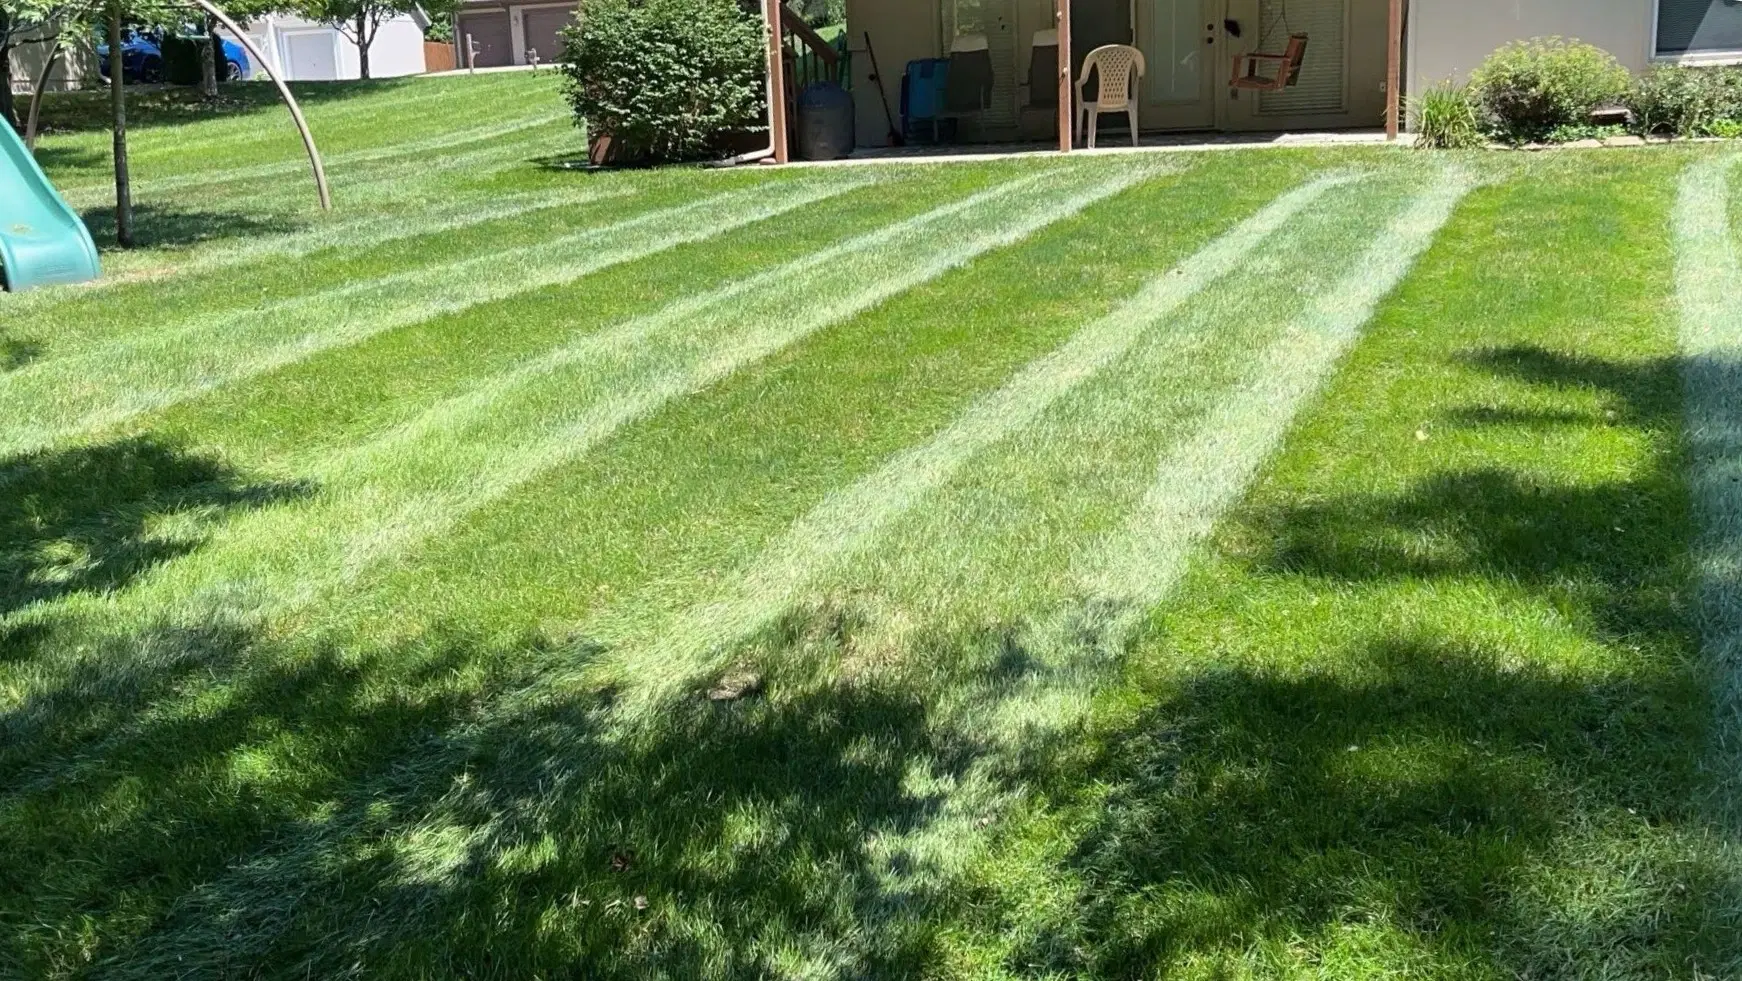 Freshly mowed lawn